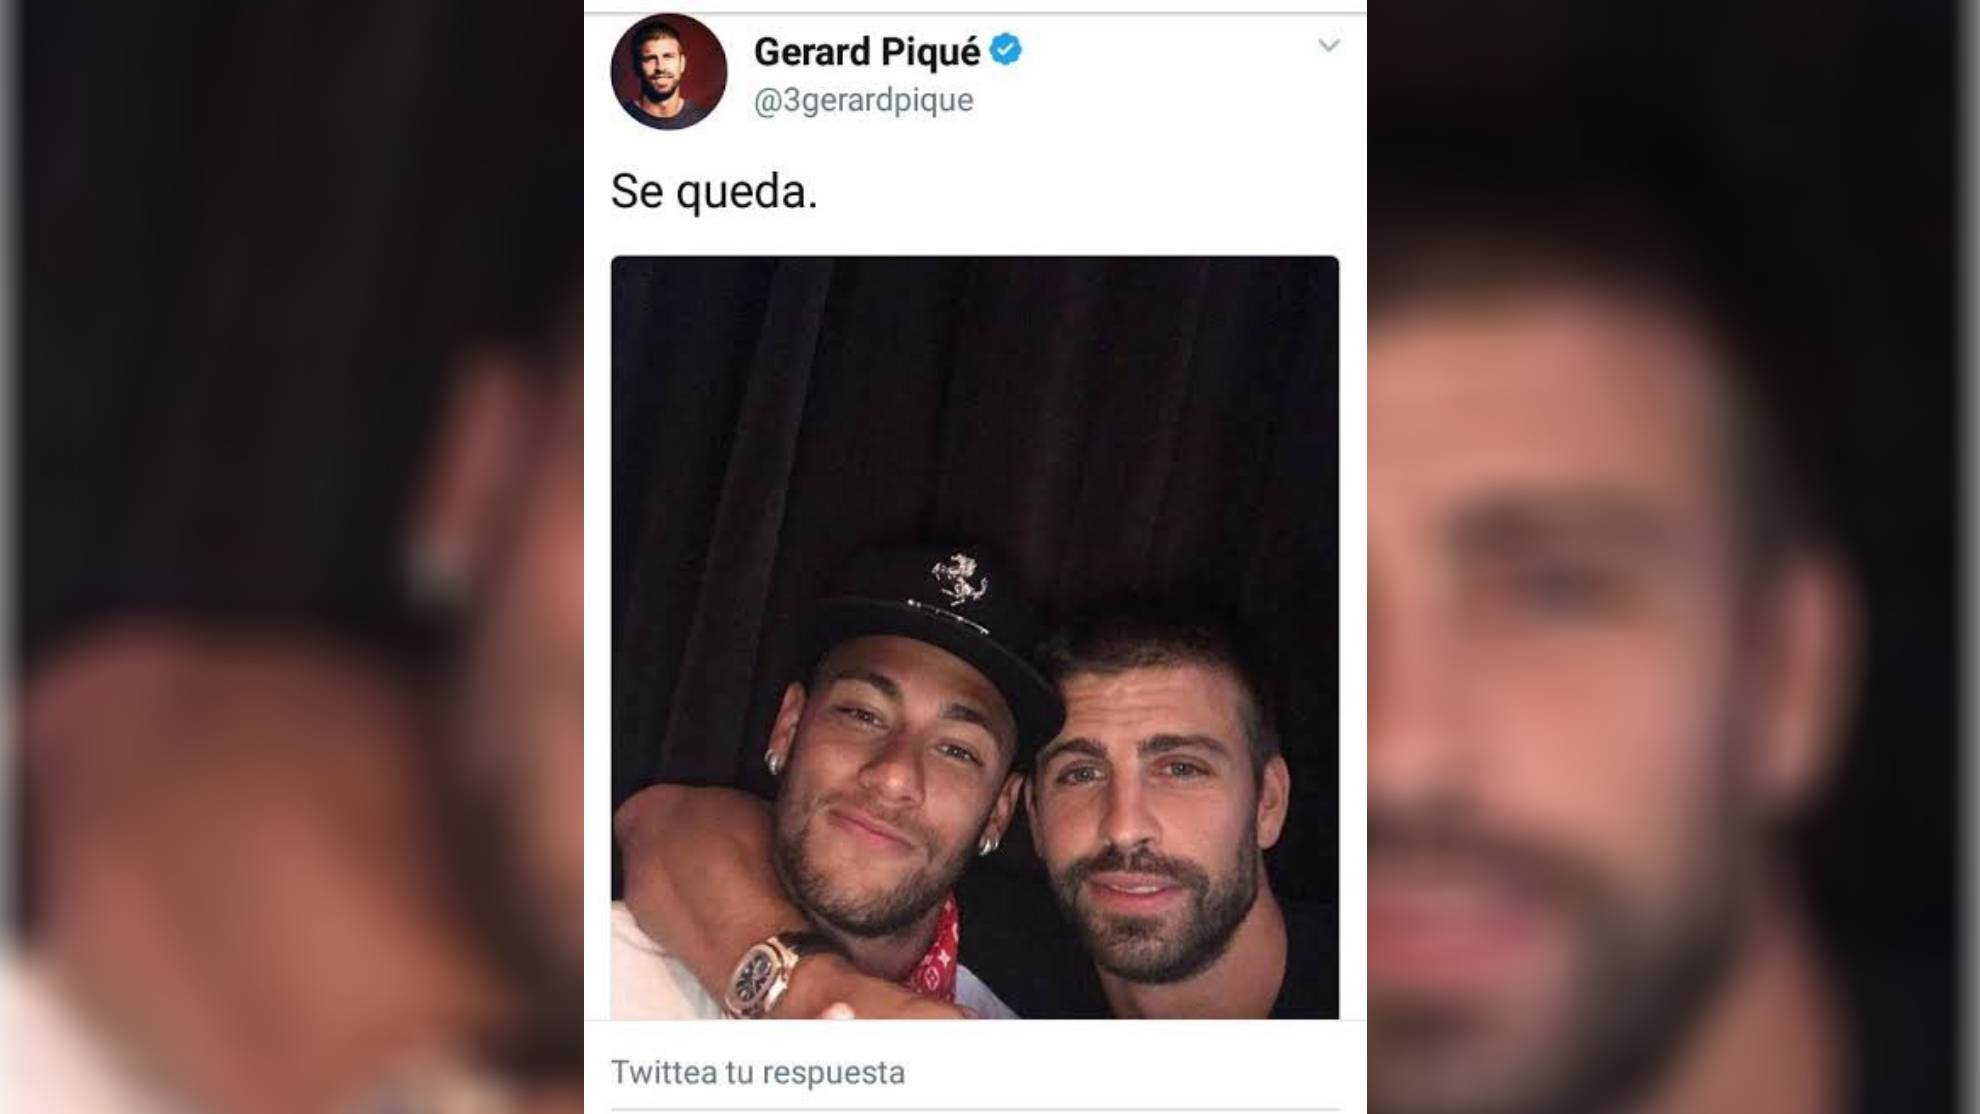 Piqu y el "Se queda" con Neymar.